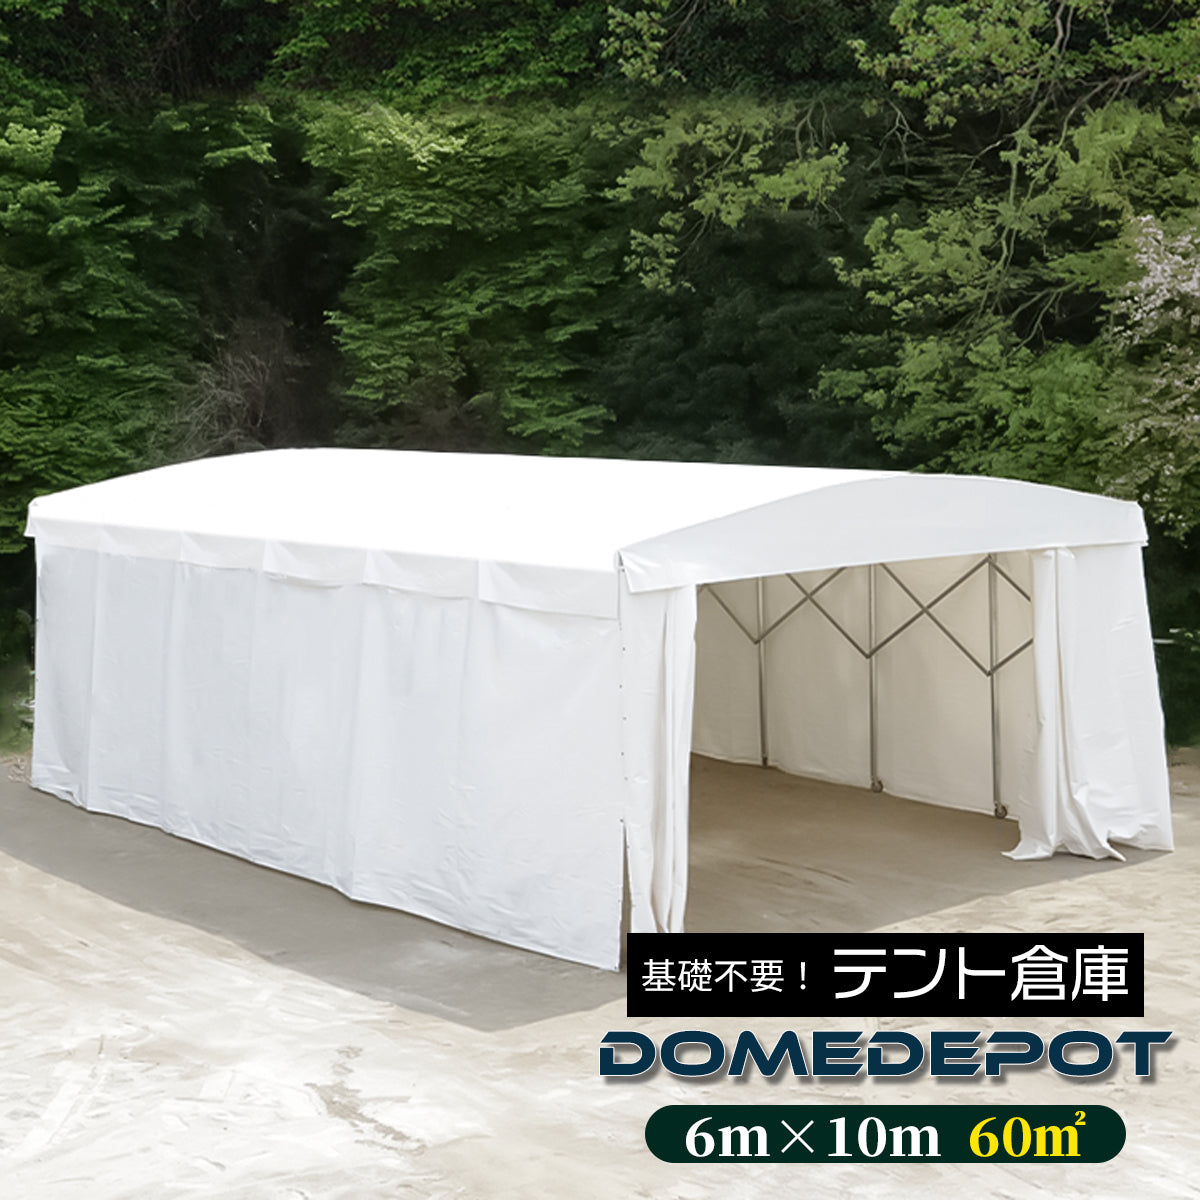 【5月中旬頃入荷予定】DOMEDEPOT 60平米 テント倉庫 移動式